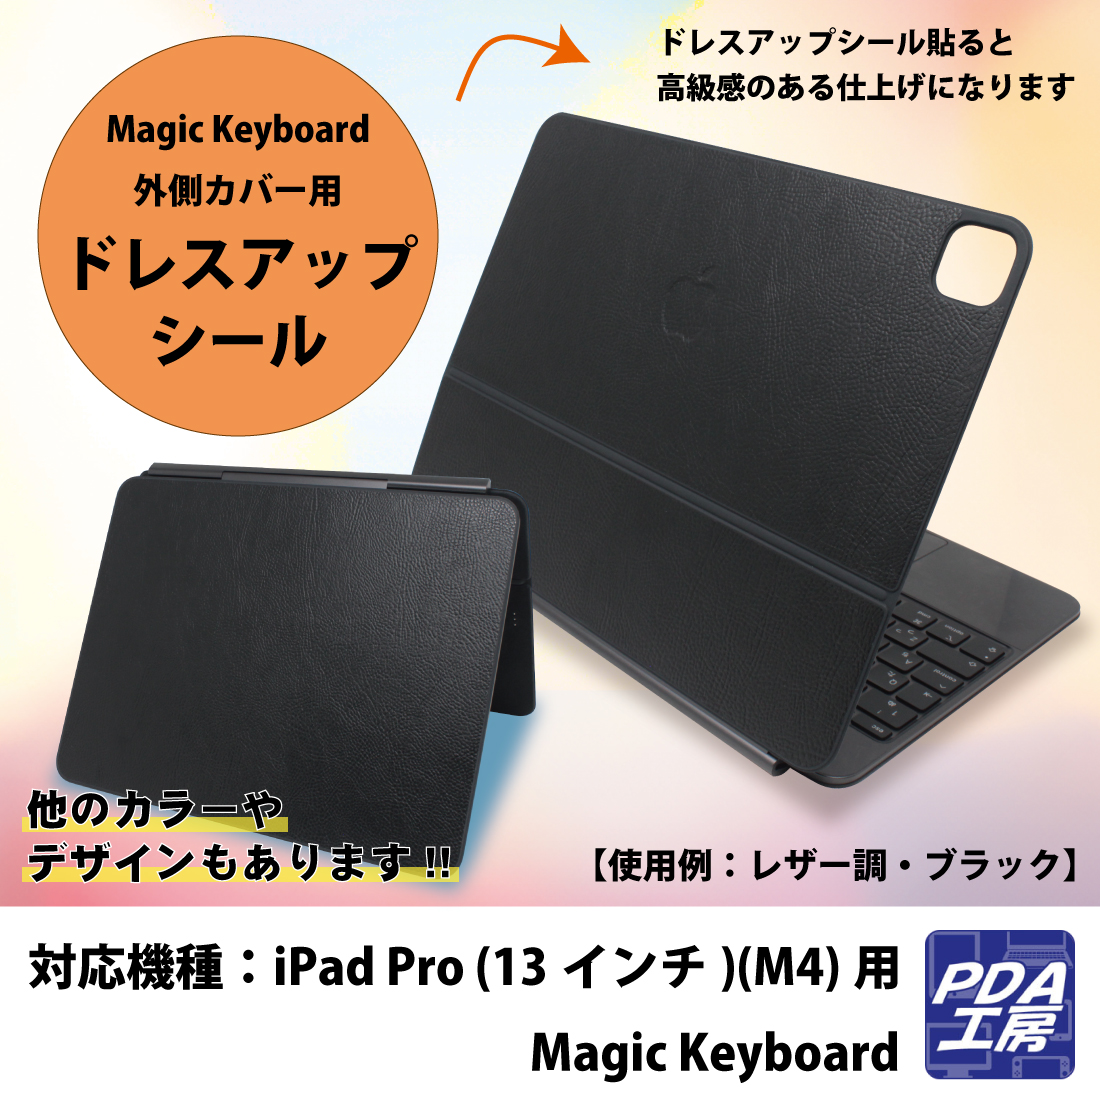 iPad Pro (13インチ)(M4)用 Magic Keyboard 保護フィルム/スキンシール【各種】PDA工房 |  ユニバーサルシステムズ株式会社